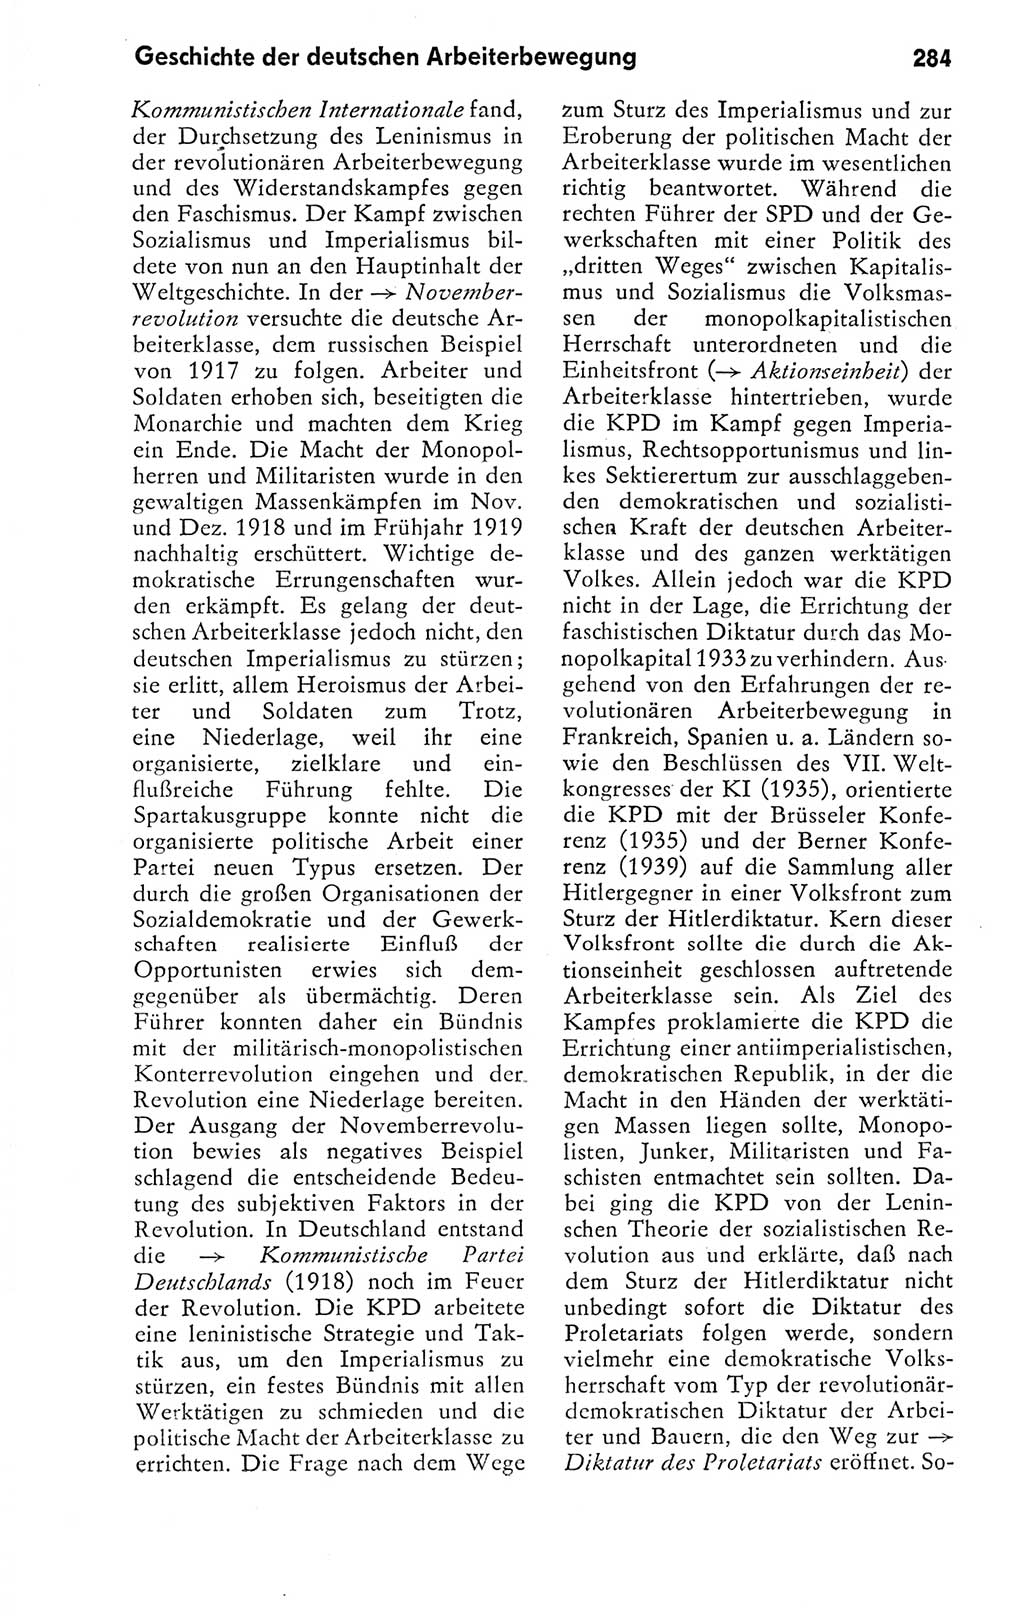 Kleines politisches Wörterbuch [Deutsche Demokratische Republik (DDR)] 1978, Seite 284 (Kl. pol. Wb. DDR 1978, S. 284)